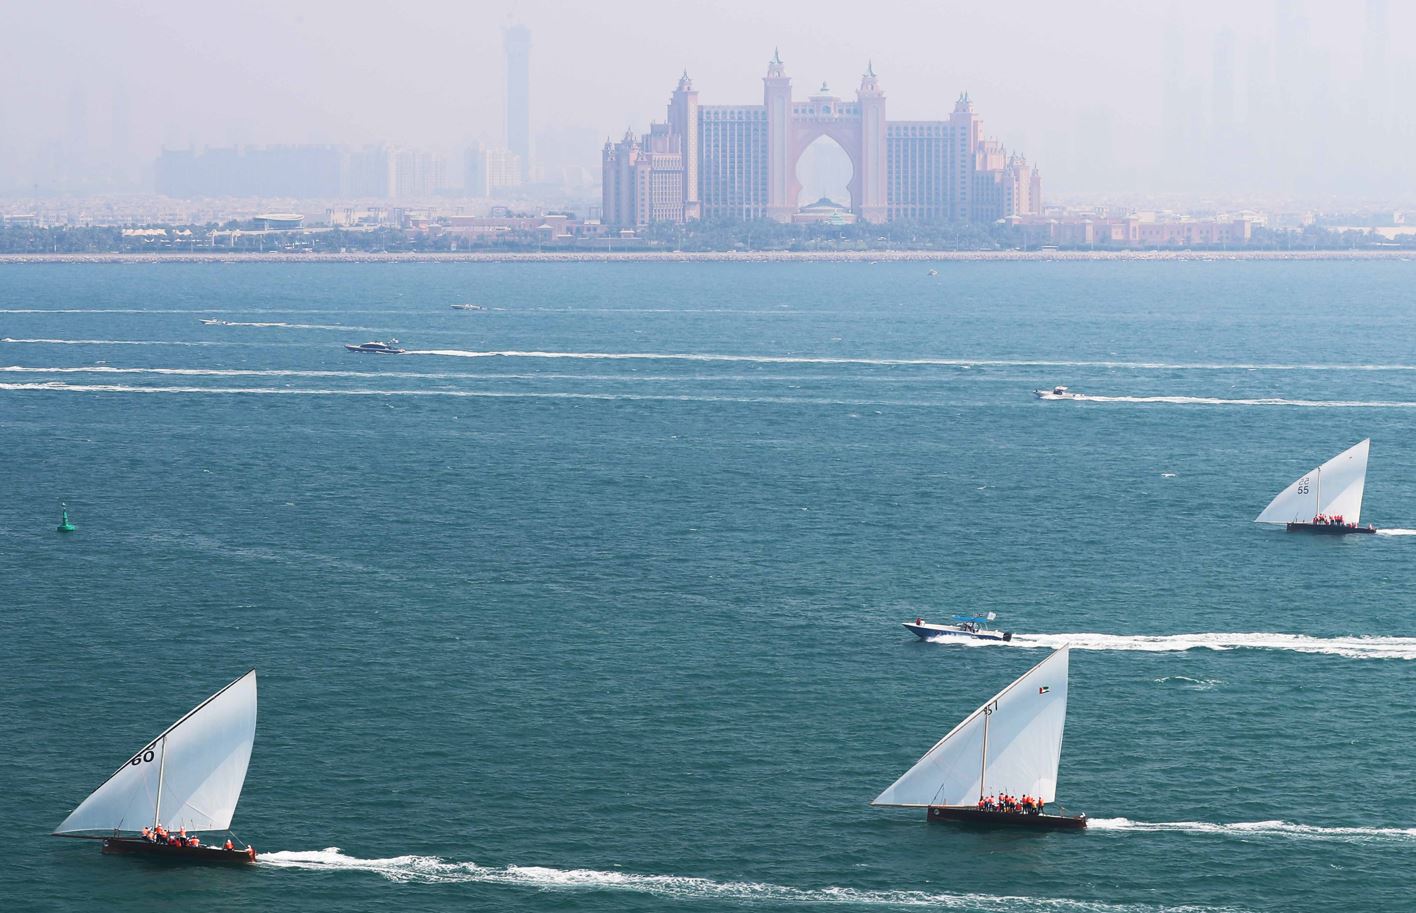 تظاهرة رياضية بحرية كبيرة مع إنطلاق منافسات سباق الجولة الأولى ..الشراعية 43 قدما تبحر السبت في شواطئ دبي